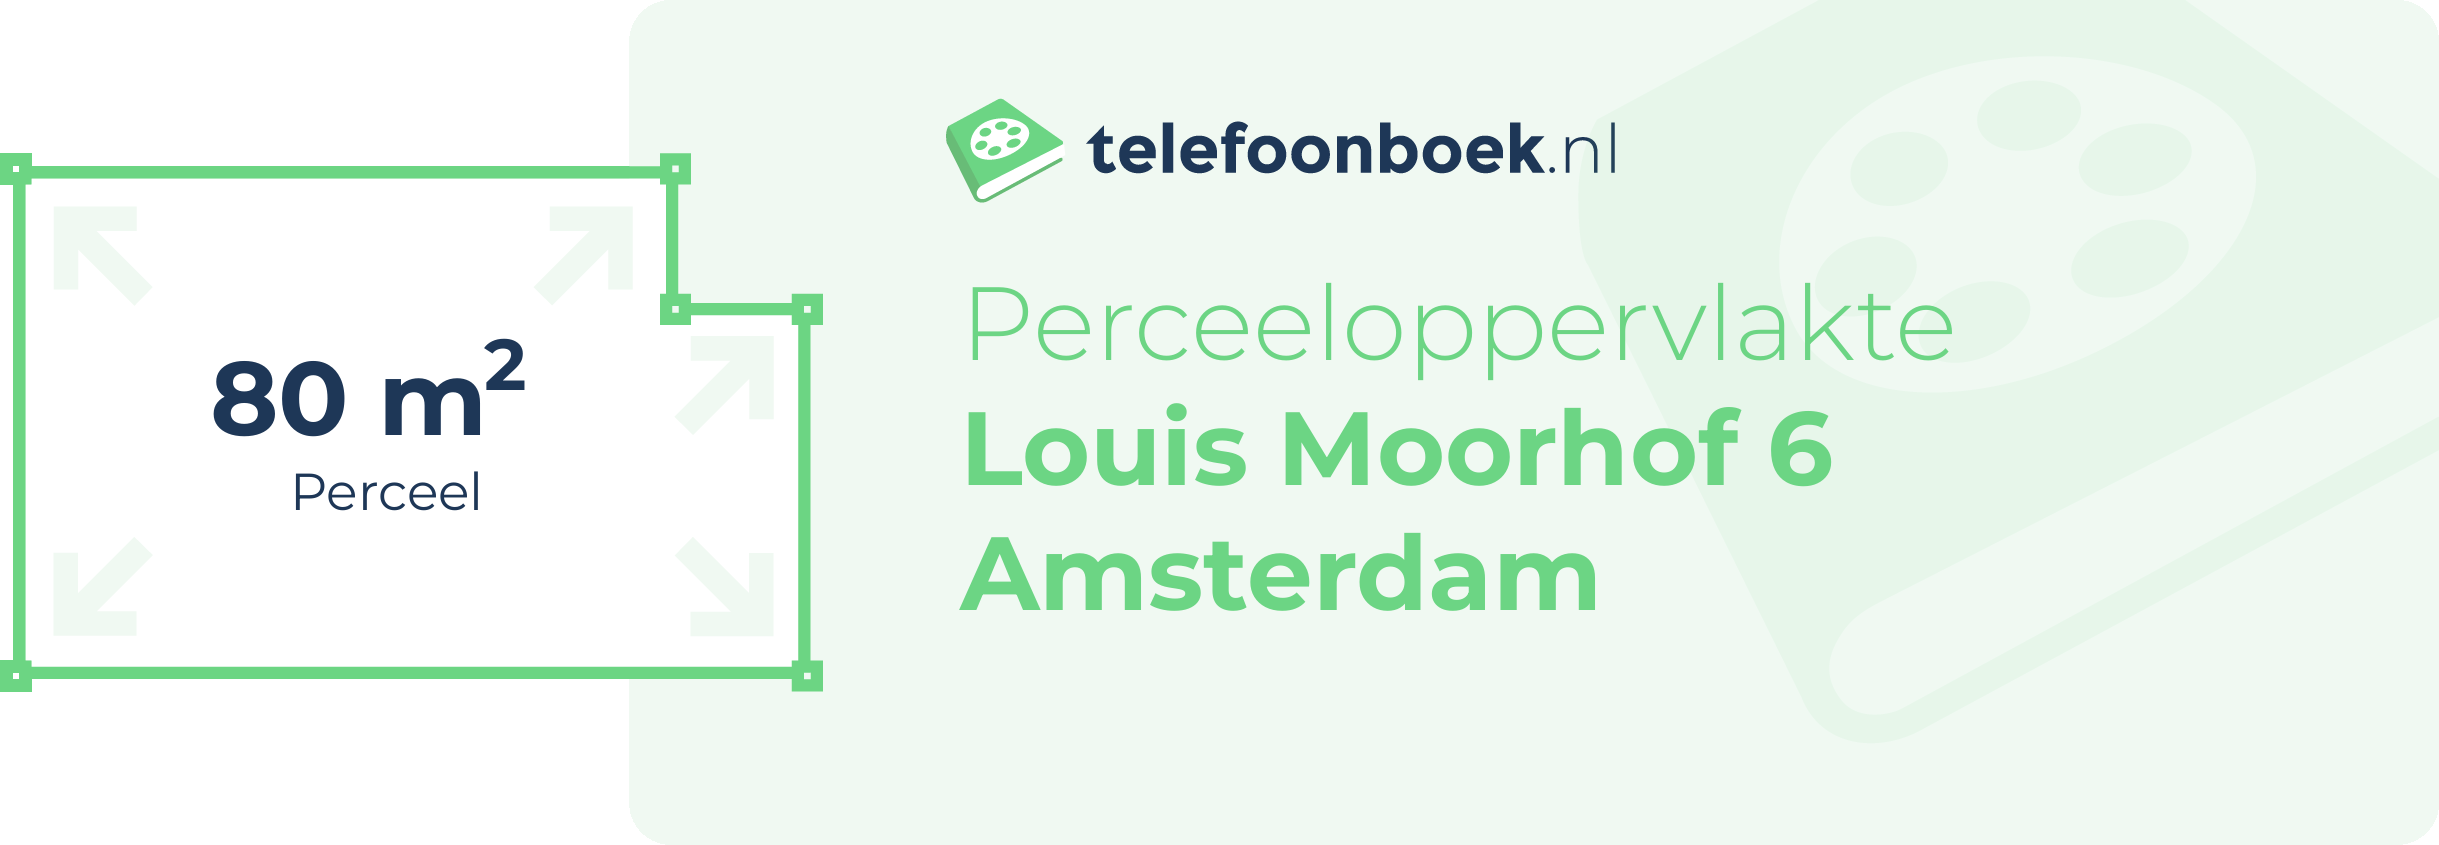 Perceeloppervlakte Louis Moorhof 6 Amsterdam